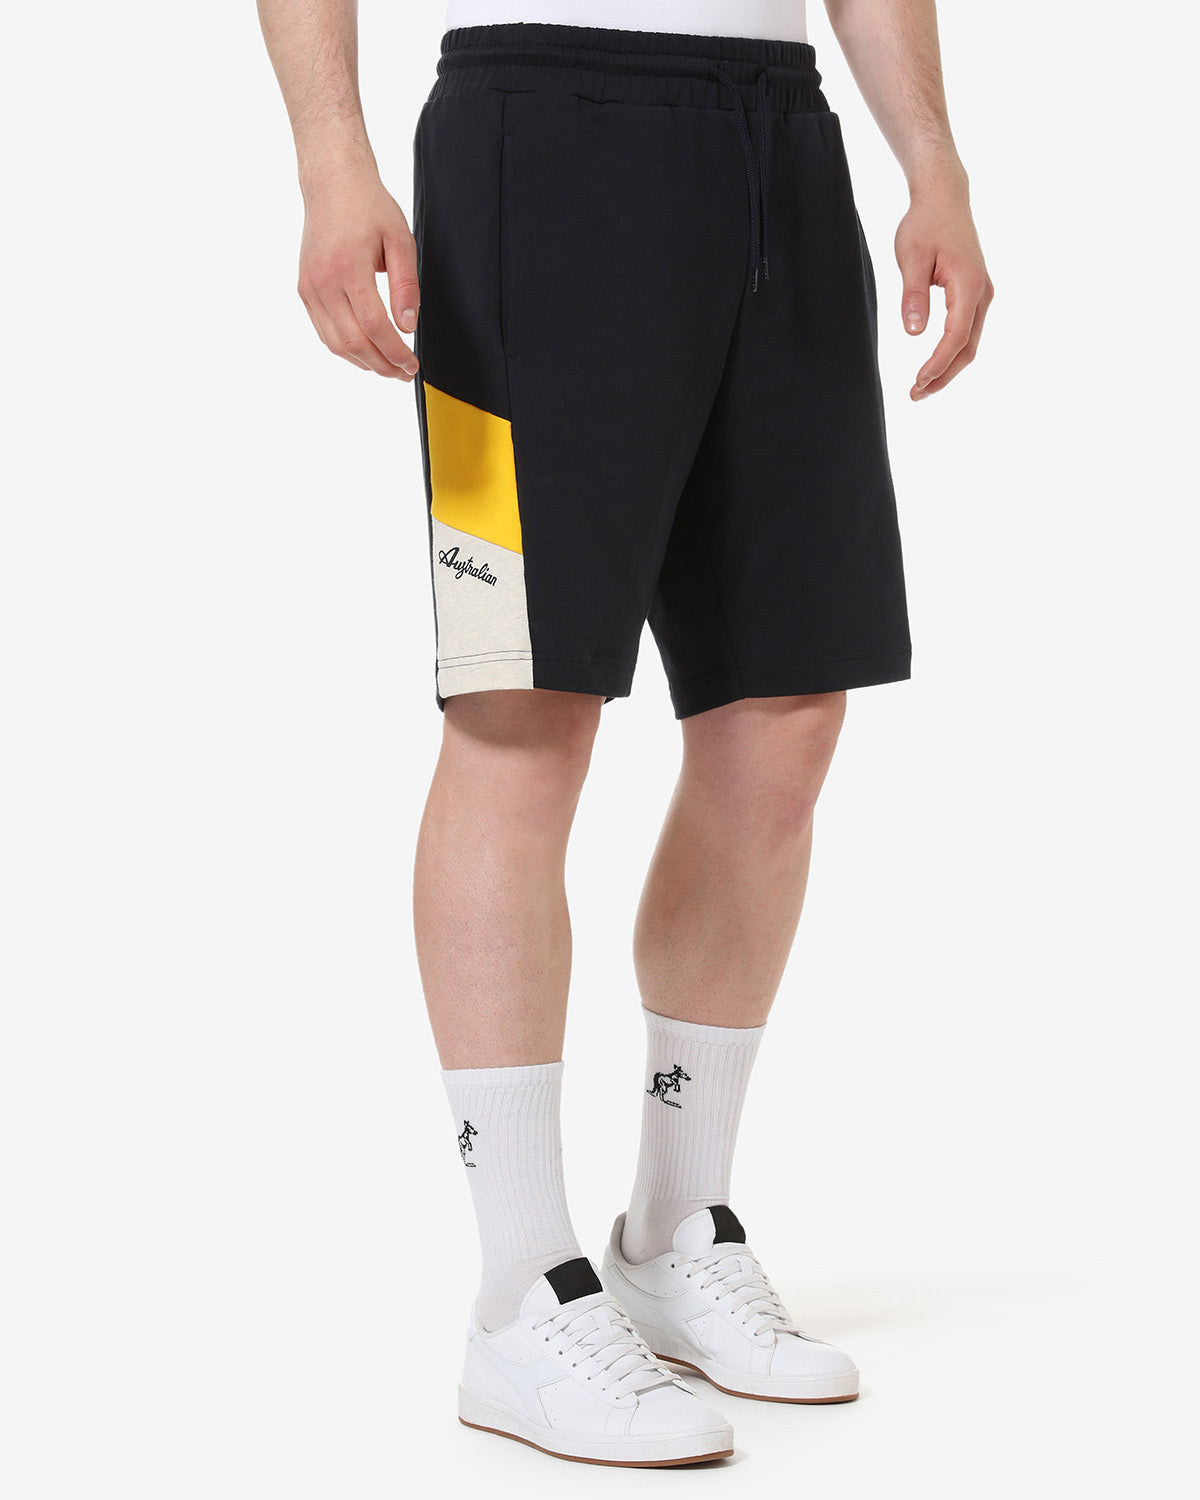 Icon Short: Australian Sportswear